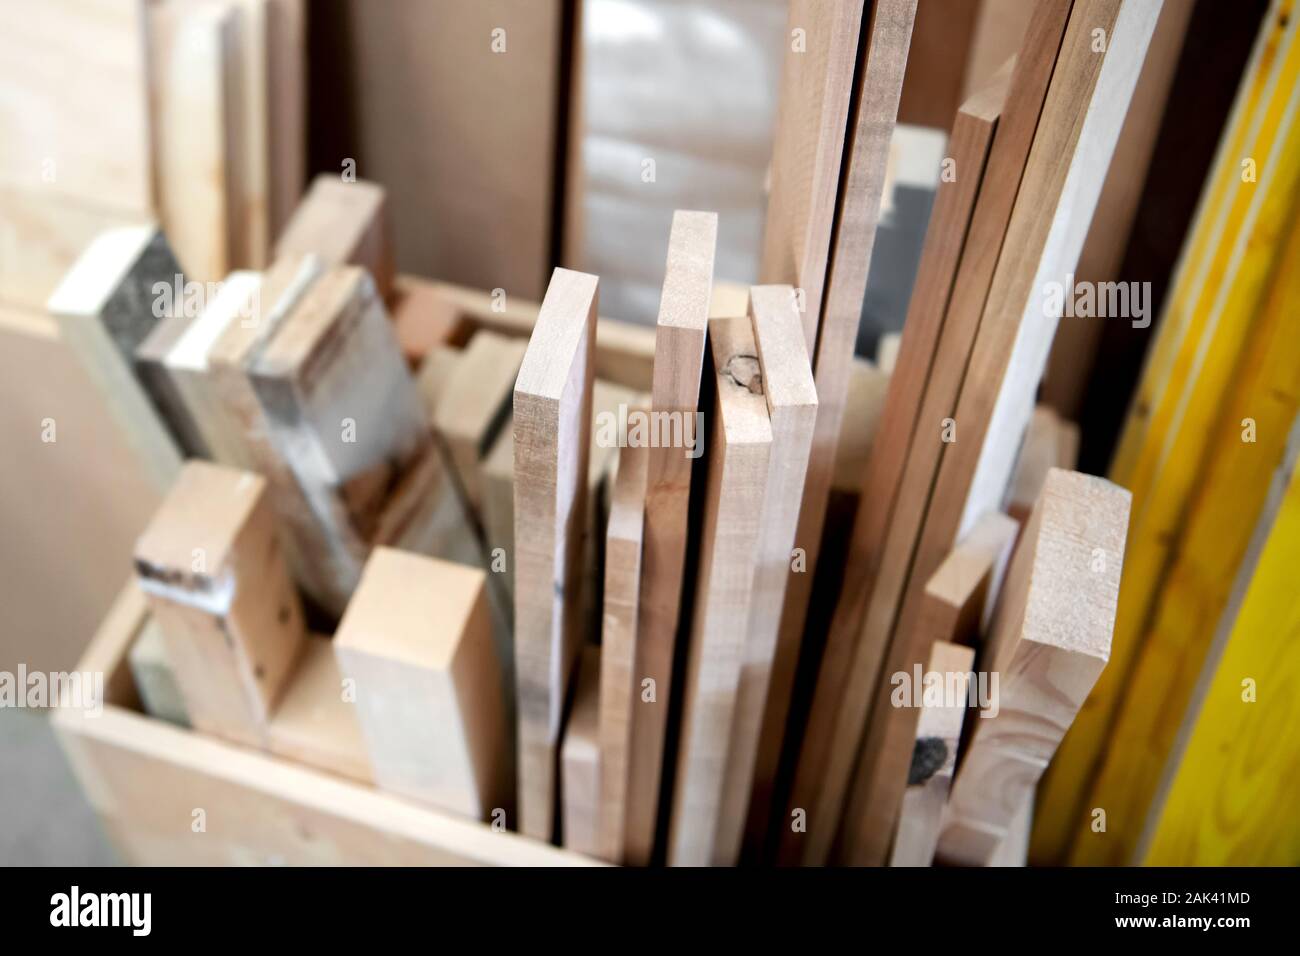 Un assortiment de blocs de rechange et des planches de bois stockés dans une boîte en bois ou un atelier de menuiserie dans une vue en gros plan Banque D'Images